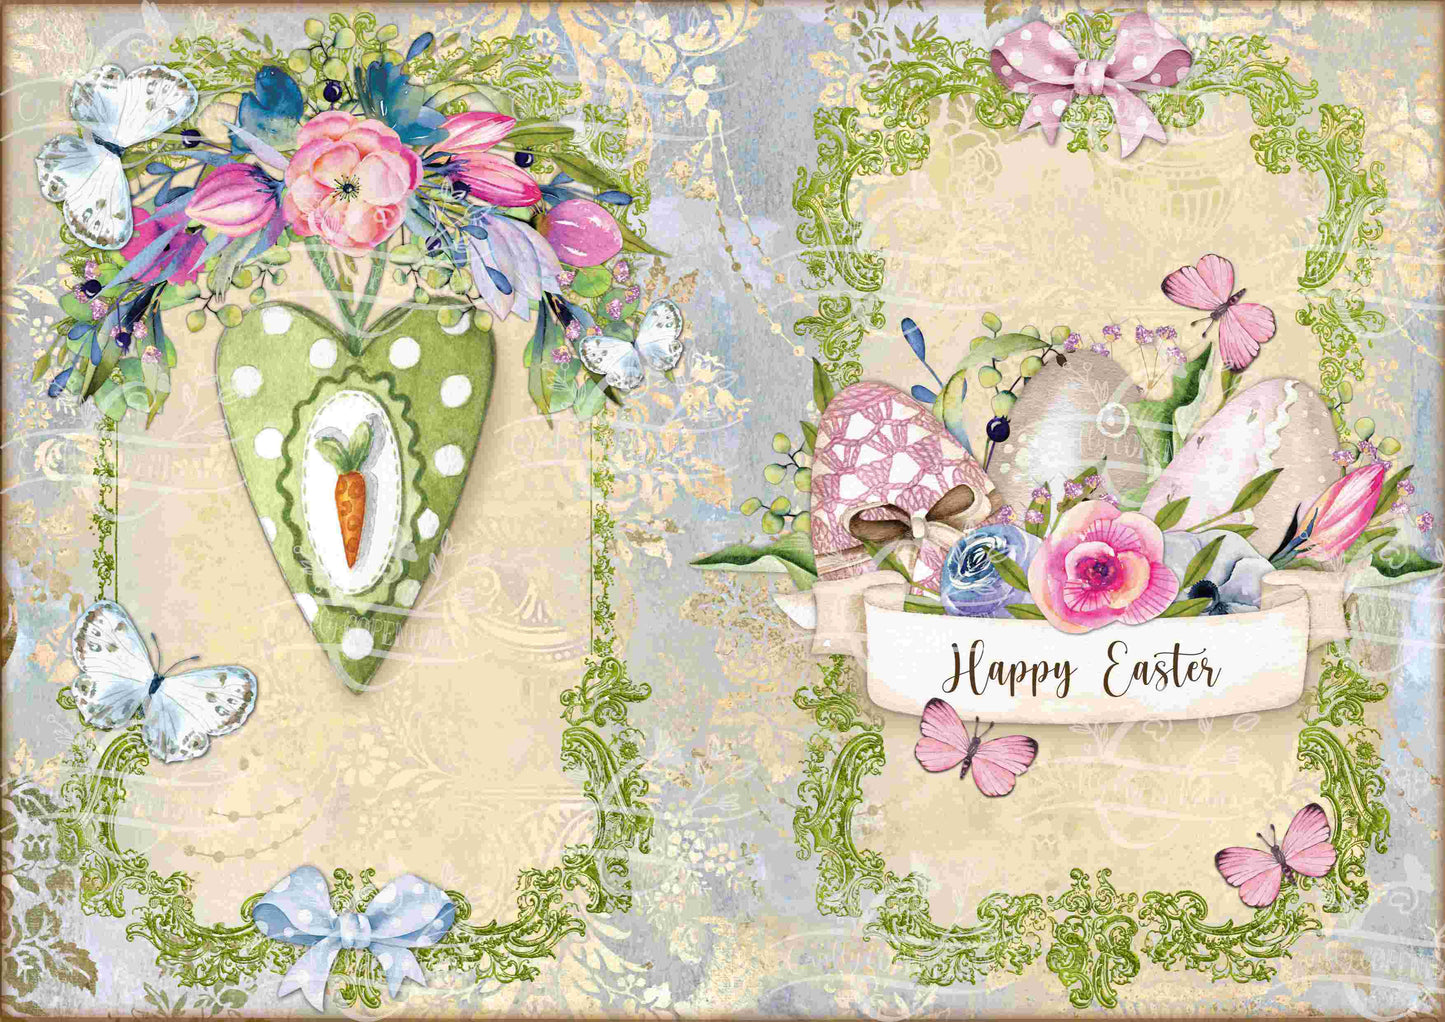 Eggstra Hoppy Easter Junk Journal Kit - 12 Pages Instant Download & Print Digital Scrapbook Paper, Cardmaking, Collage Paper, Spring, Easter